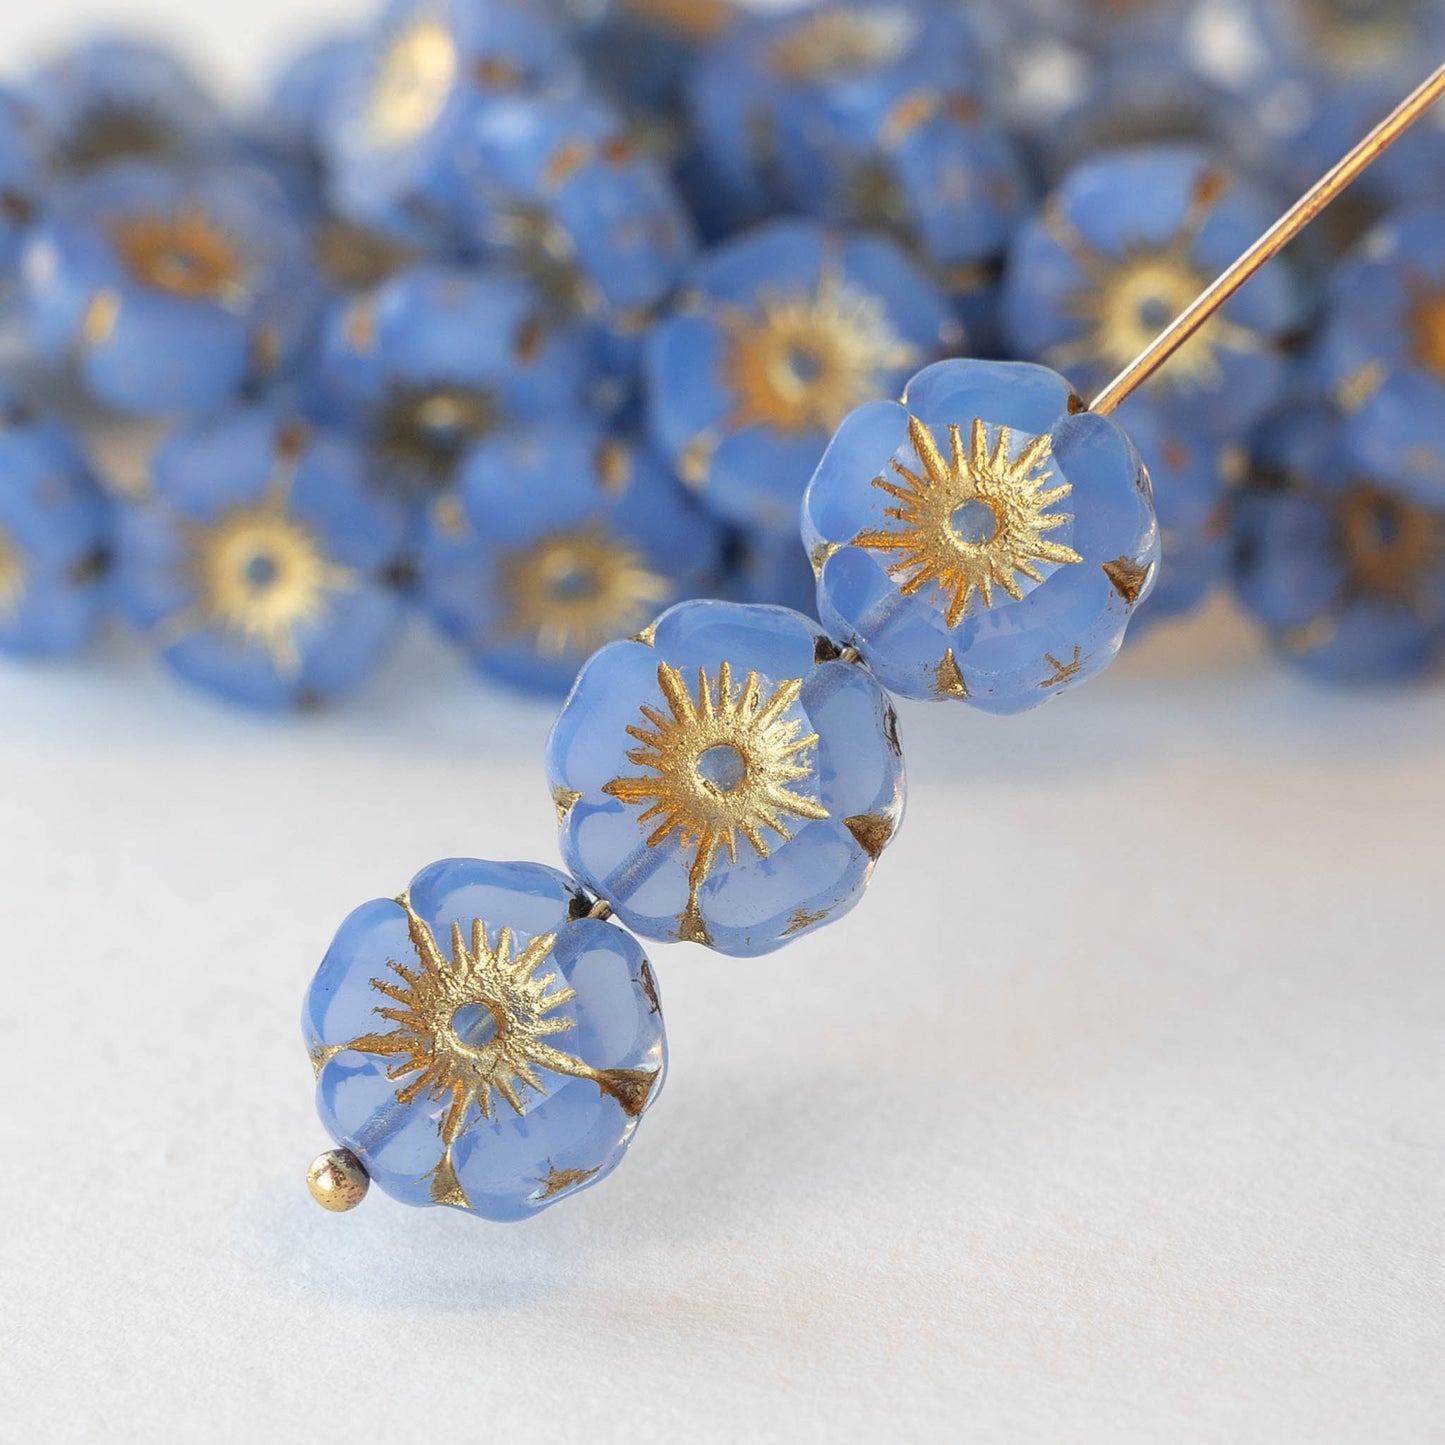 12mm Glass Flower Beads - Blue Opaline - 12 beads